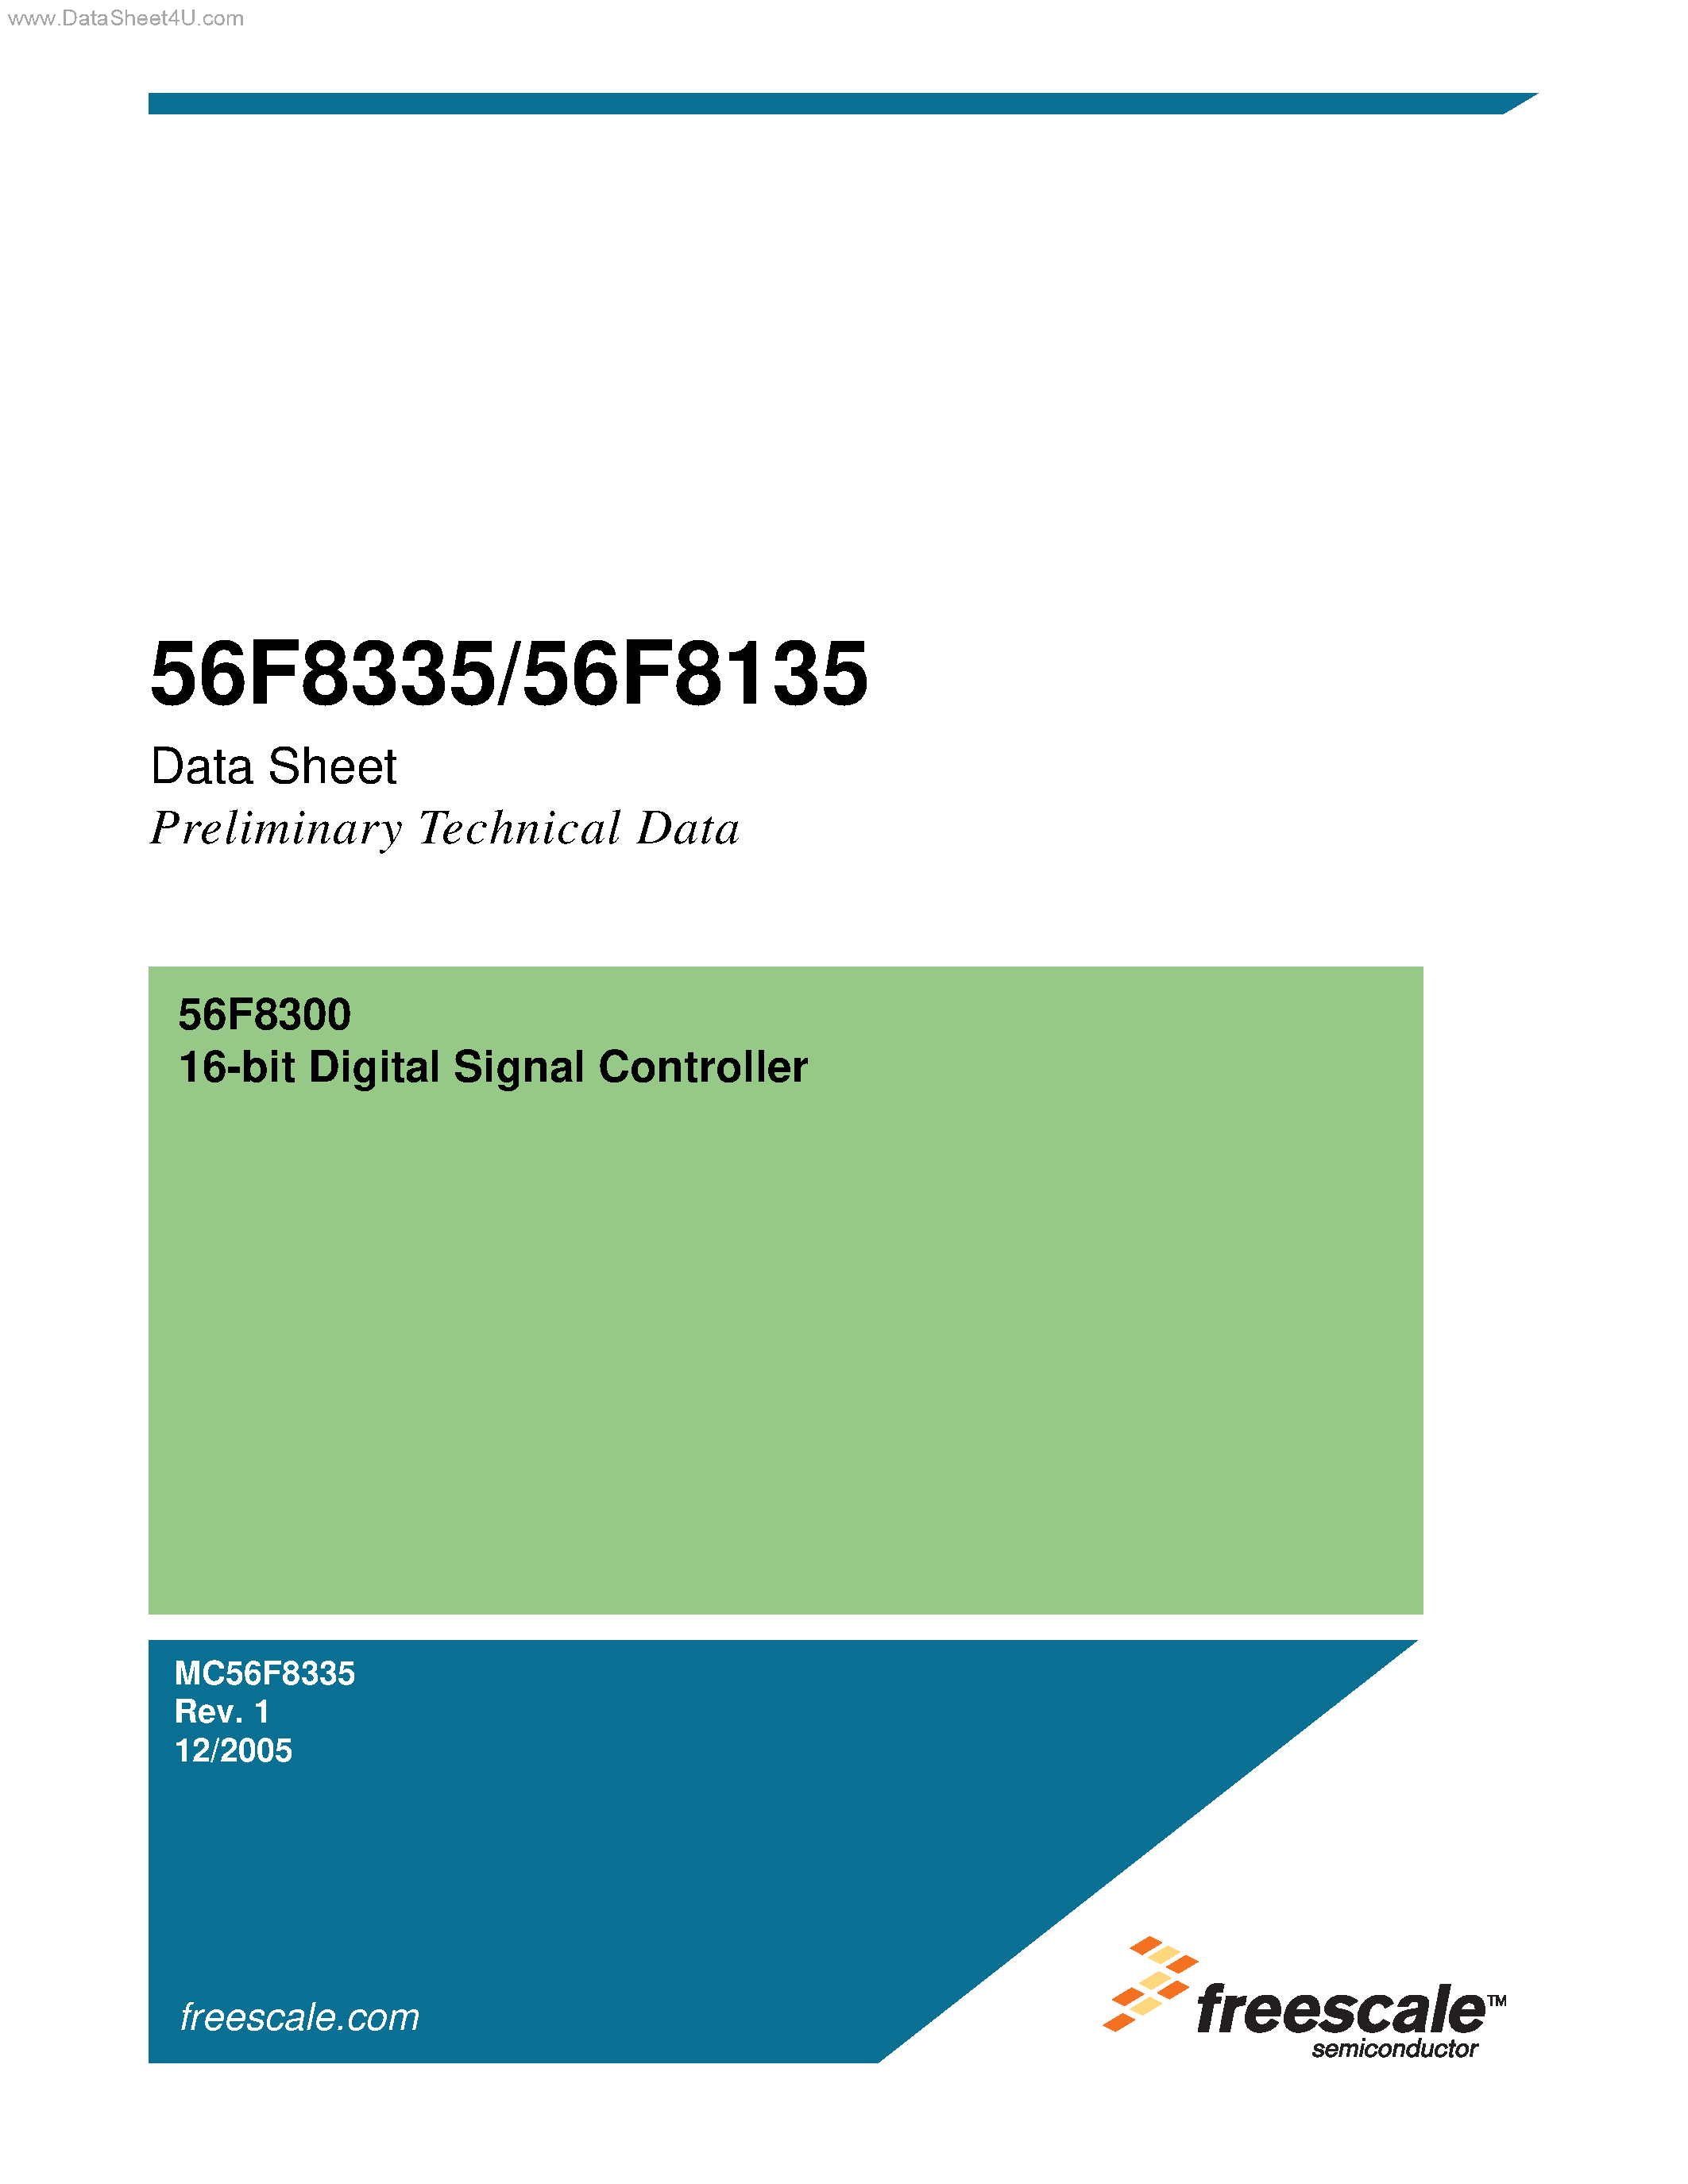 Даташит MC56F8135 - (MC56F8135 / MC56F8335) 16-bit Digital Signal Controller страница 1